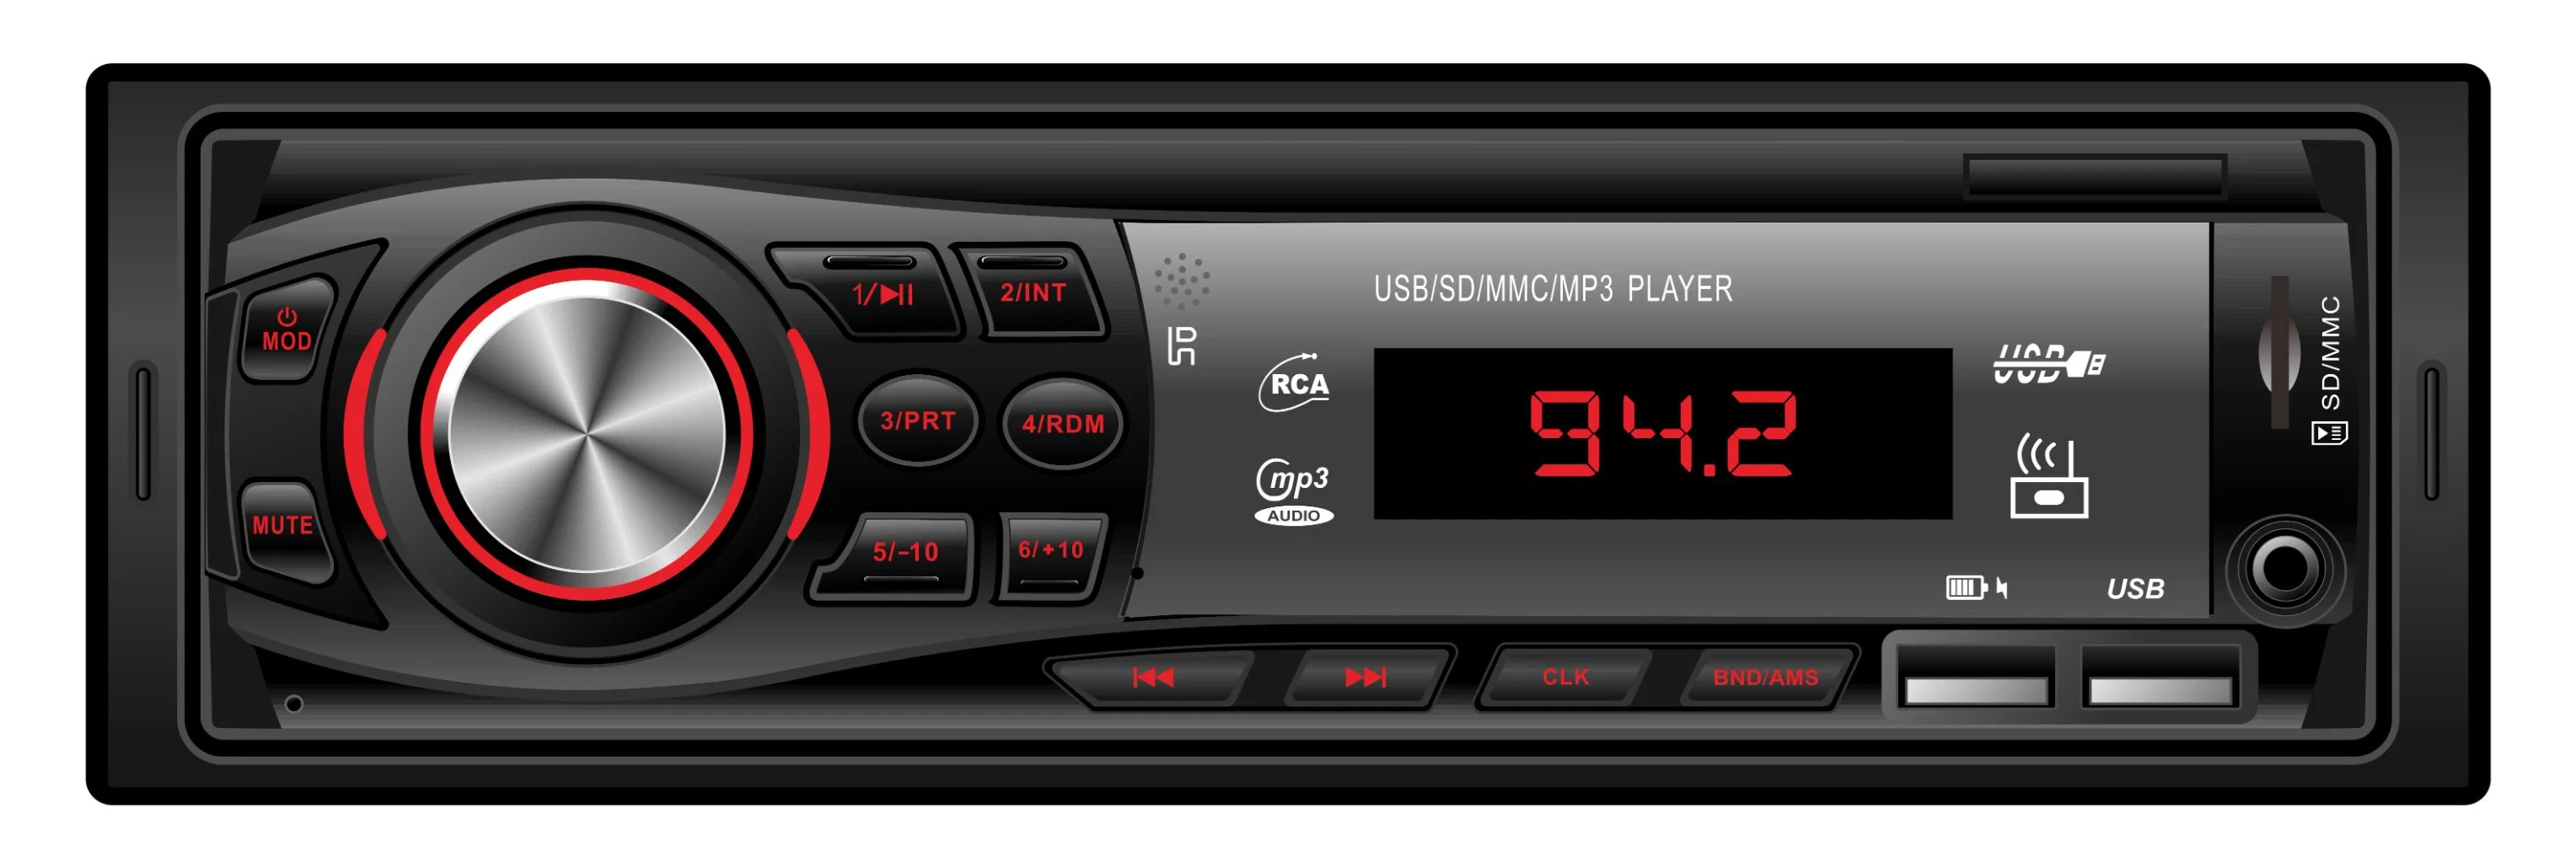 مشغل صوت MP3 متعدد الوسائط بوحدة رأس سيارة DIN فردية